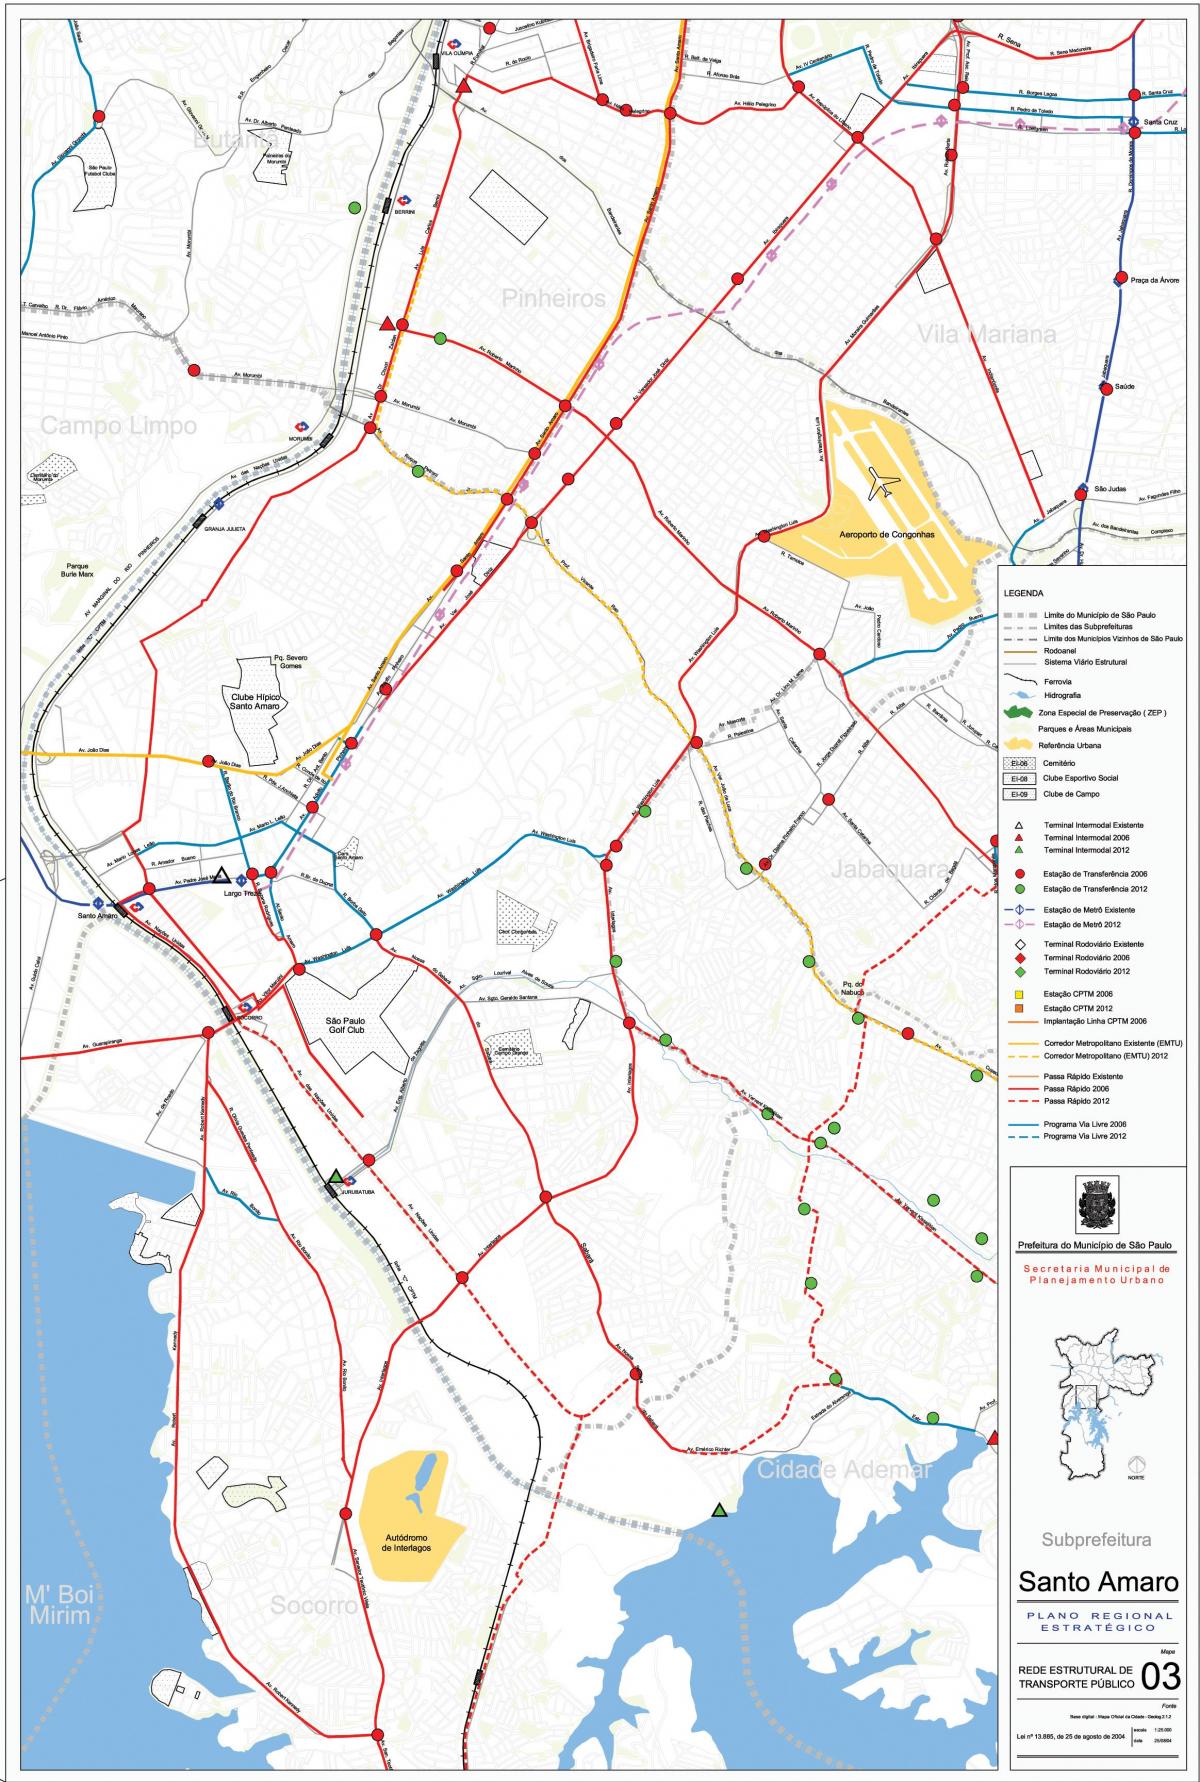 Mappa di Santo Amaro São Paulo - trasporti Pubblici